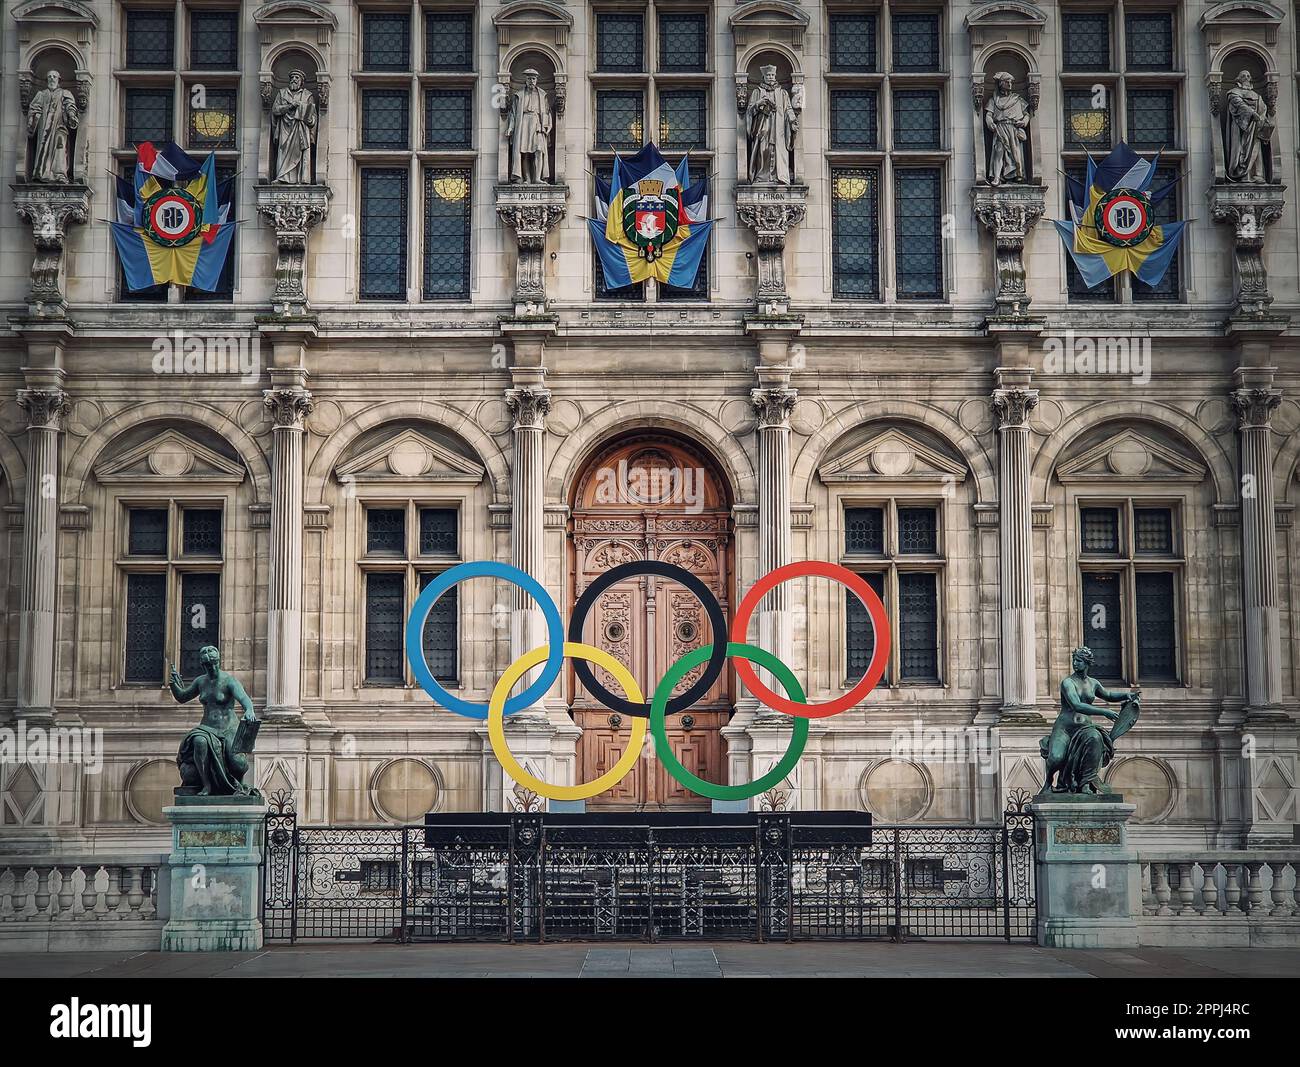 Fermer l'entrée de l'hôtel de ville de Paris. Vue extérieure à la belle façade ornée du bâtiment historique et le symbole des anneaux de jeux olympiques en face des portes centrales, comme la France hôte en 2024 Banque D'Images